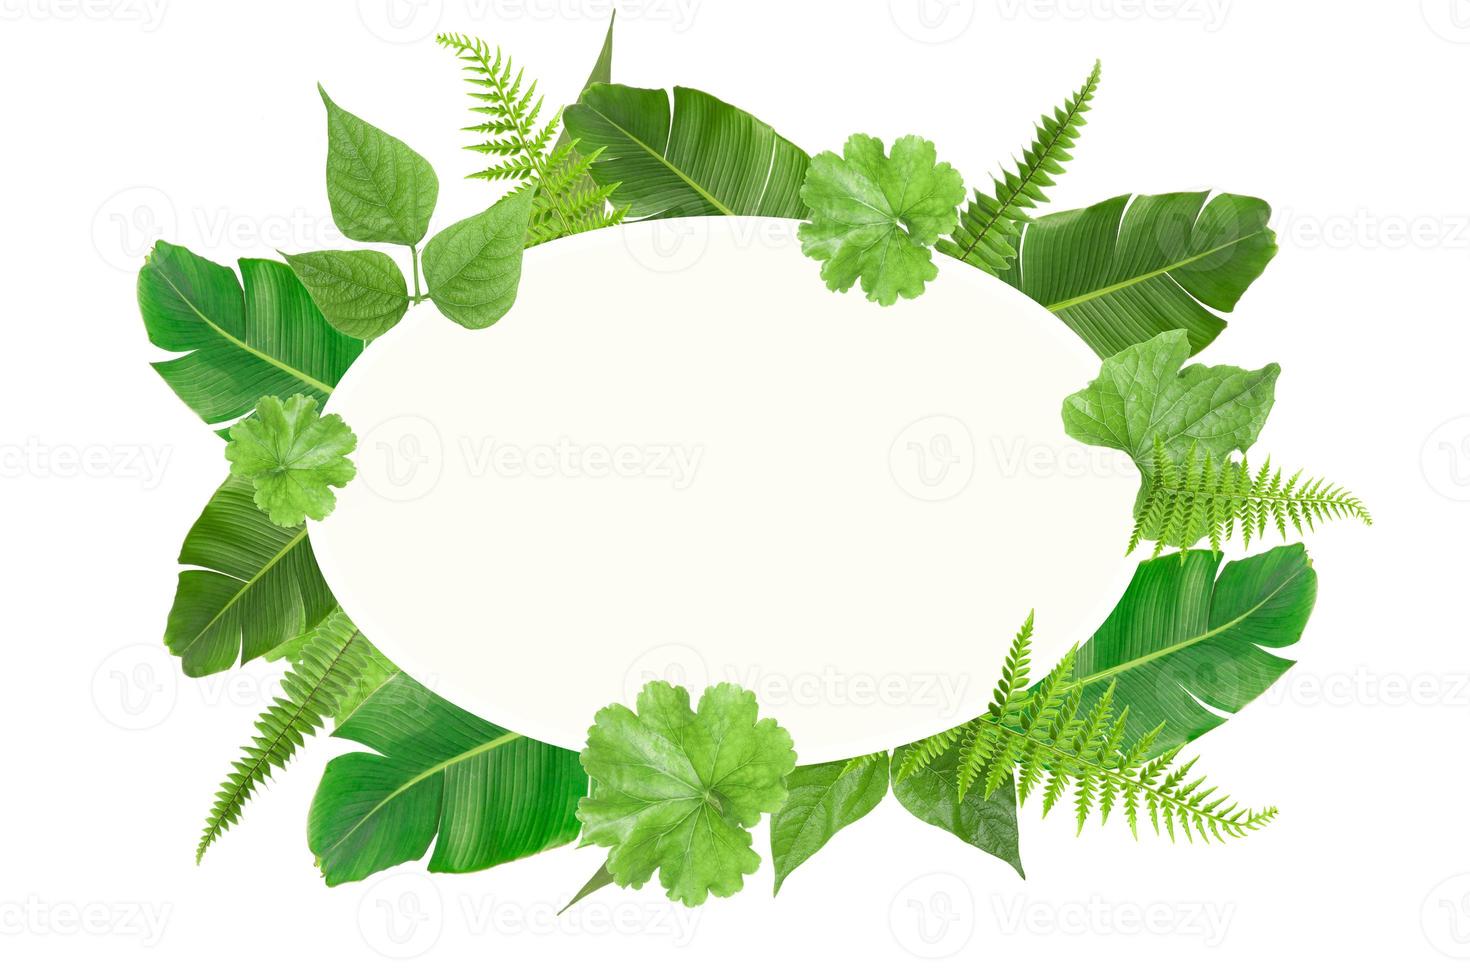 plantilla de marco de hojas ovaladas tropicales verdes foto